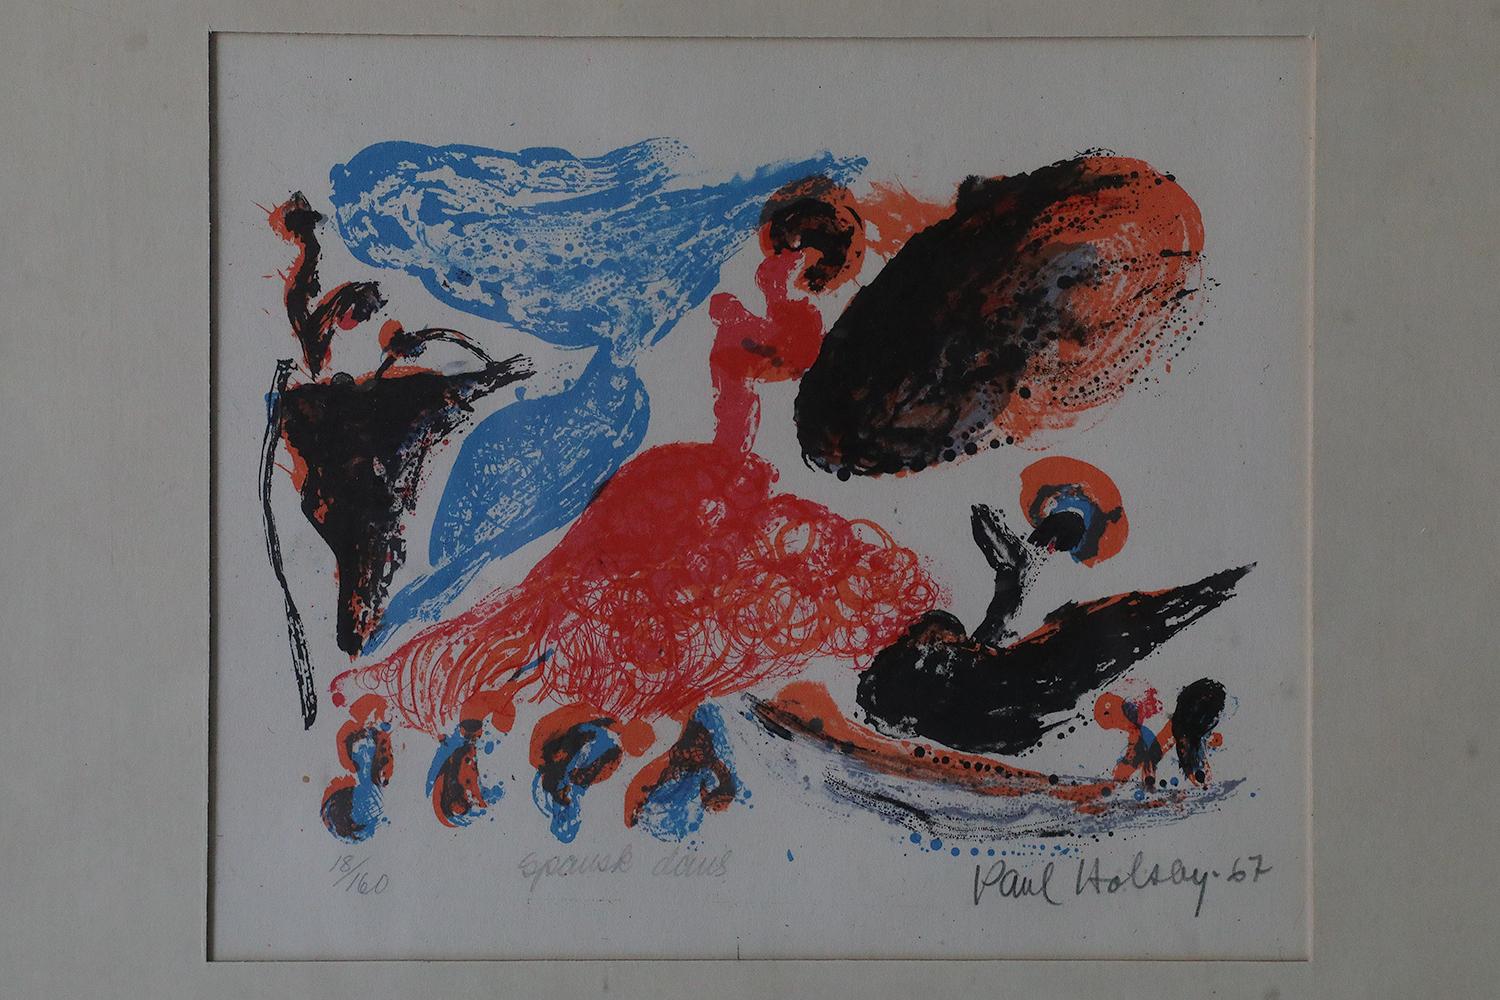 Paul Holsby, Spansk dans, 1967
Farblithographie
Nummer 18/160
Das Werk ist vom Künstler signiert, mit Datum, Titel und Einzelnummer (mit Bleistift) versehen.
Arbeitsmaße 23/29
Das Werk ist gerahmt

Paul Holsby wurde 1921 in Norrtälje geboren und